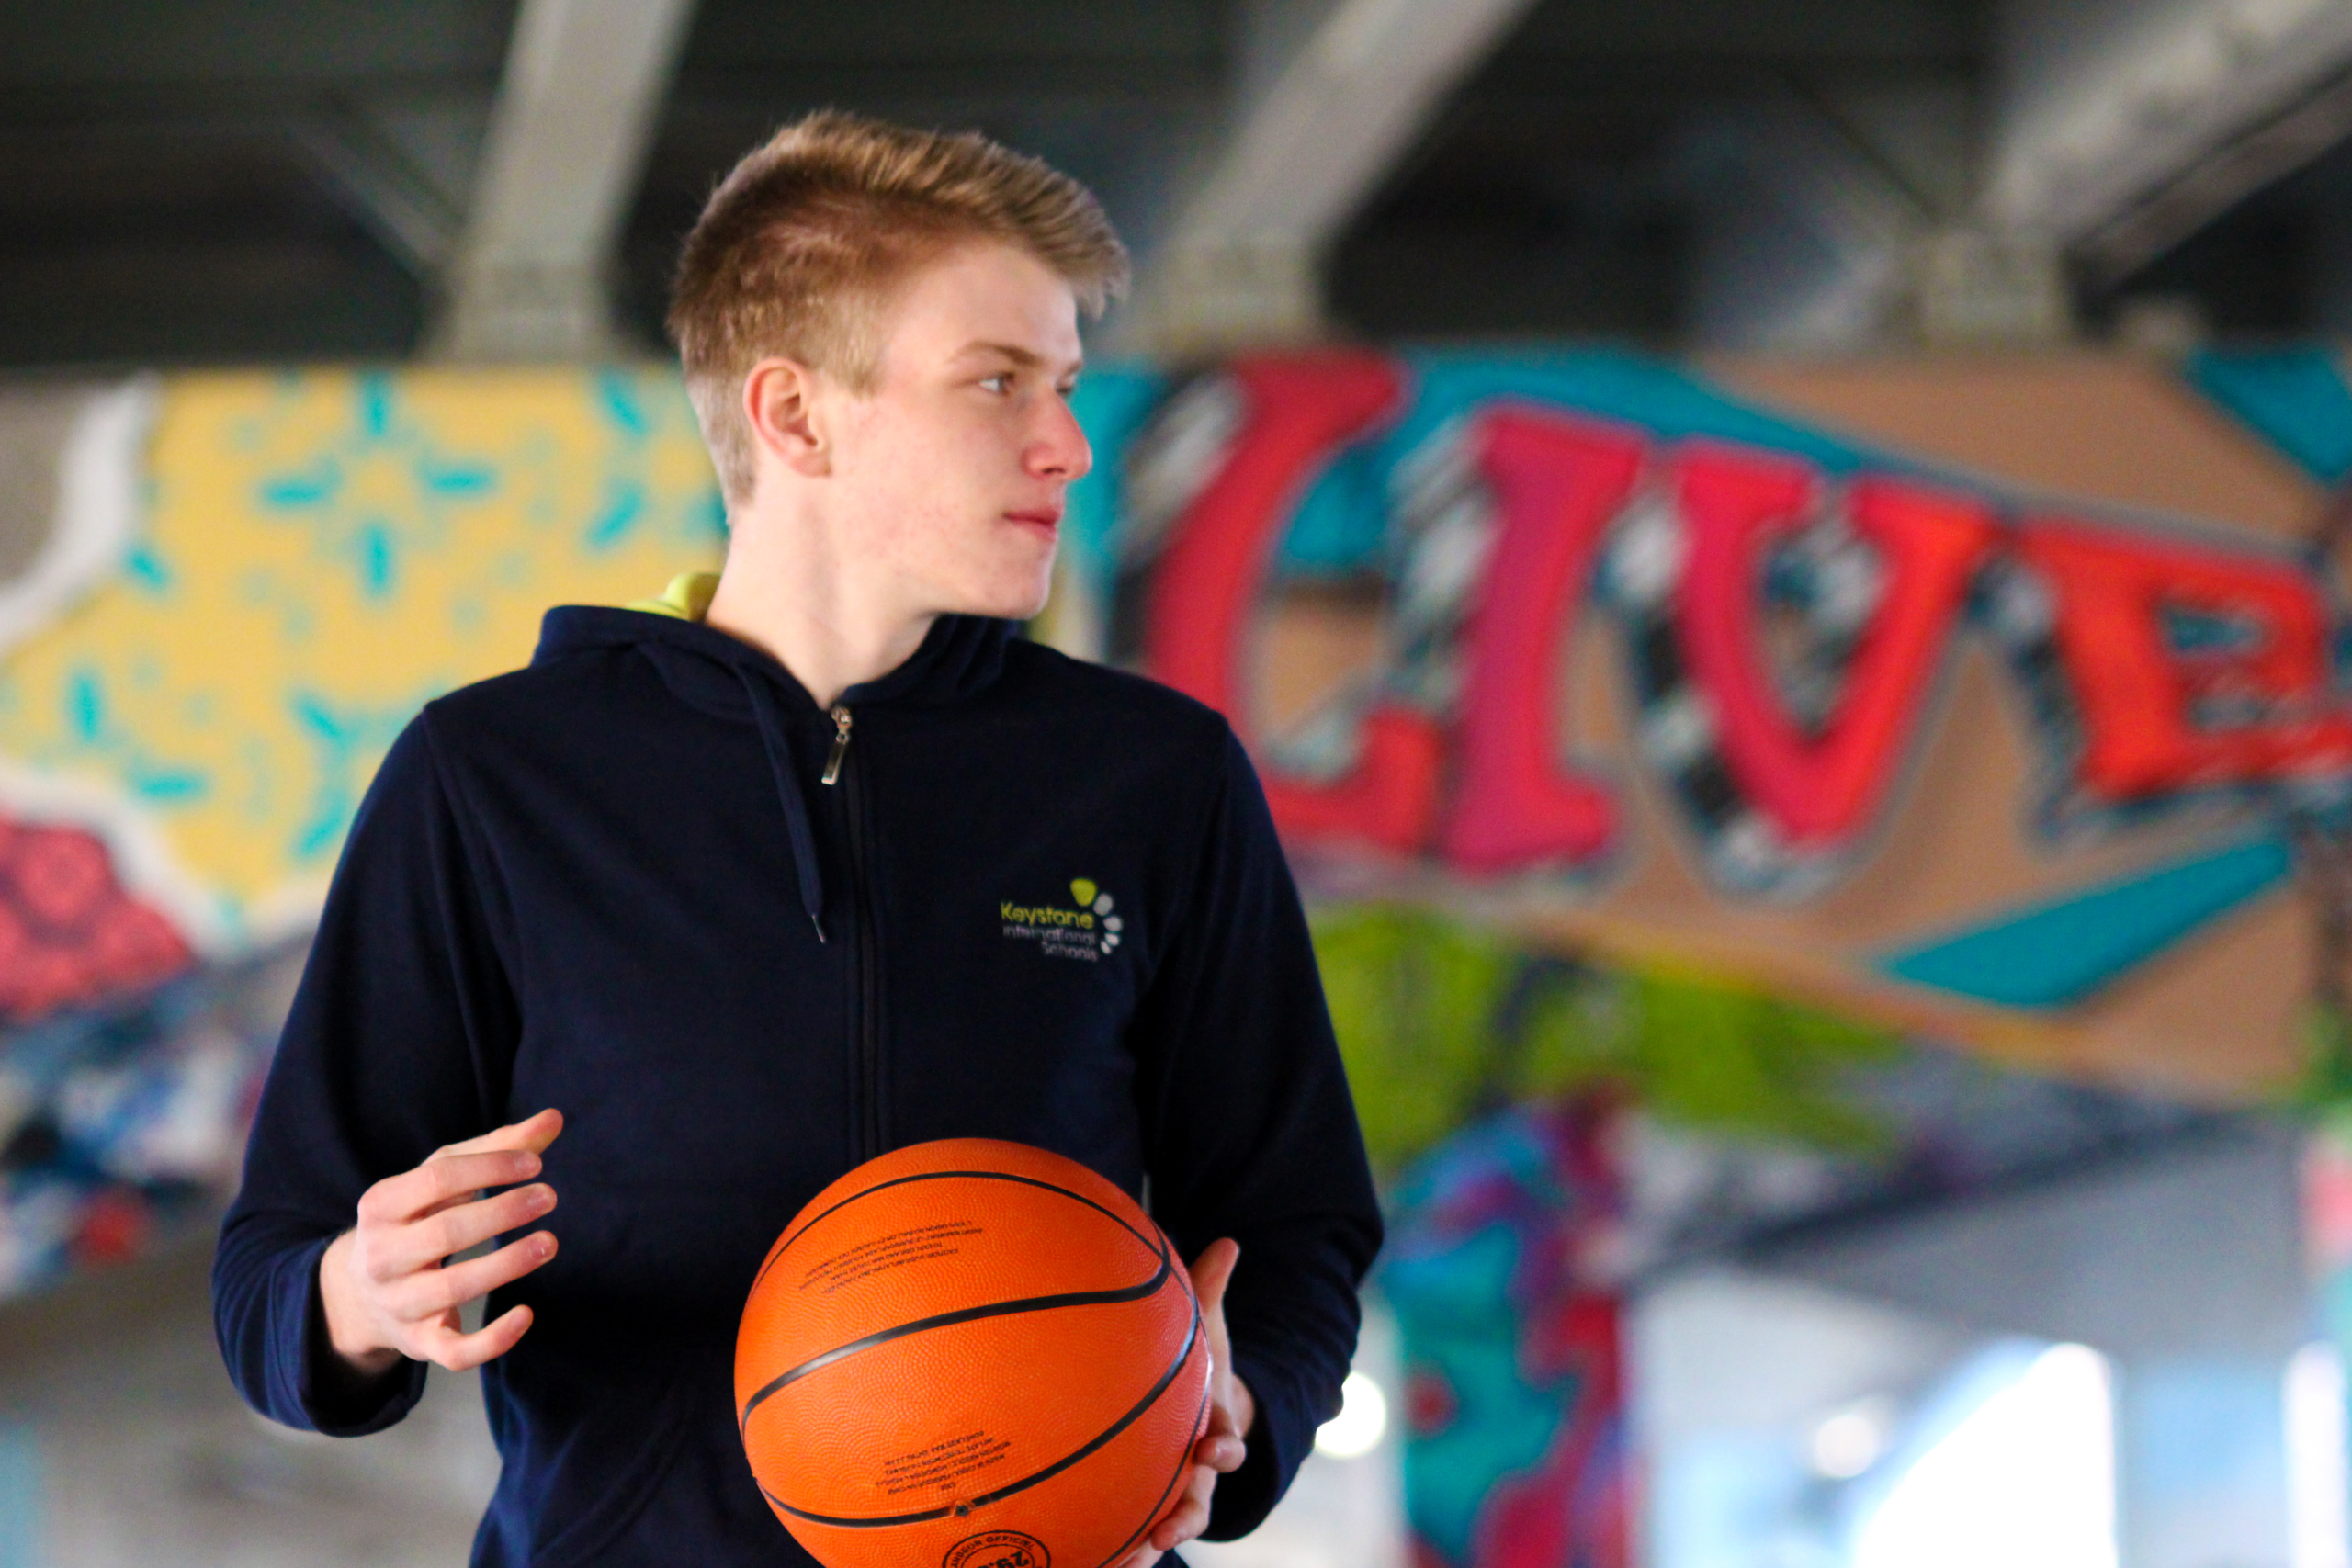 Keystone Student playing basketball